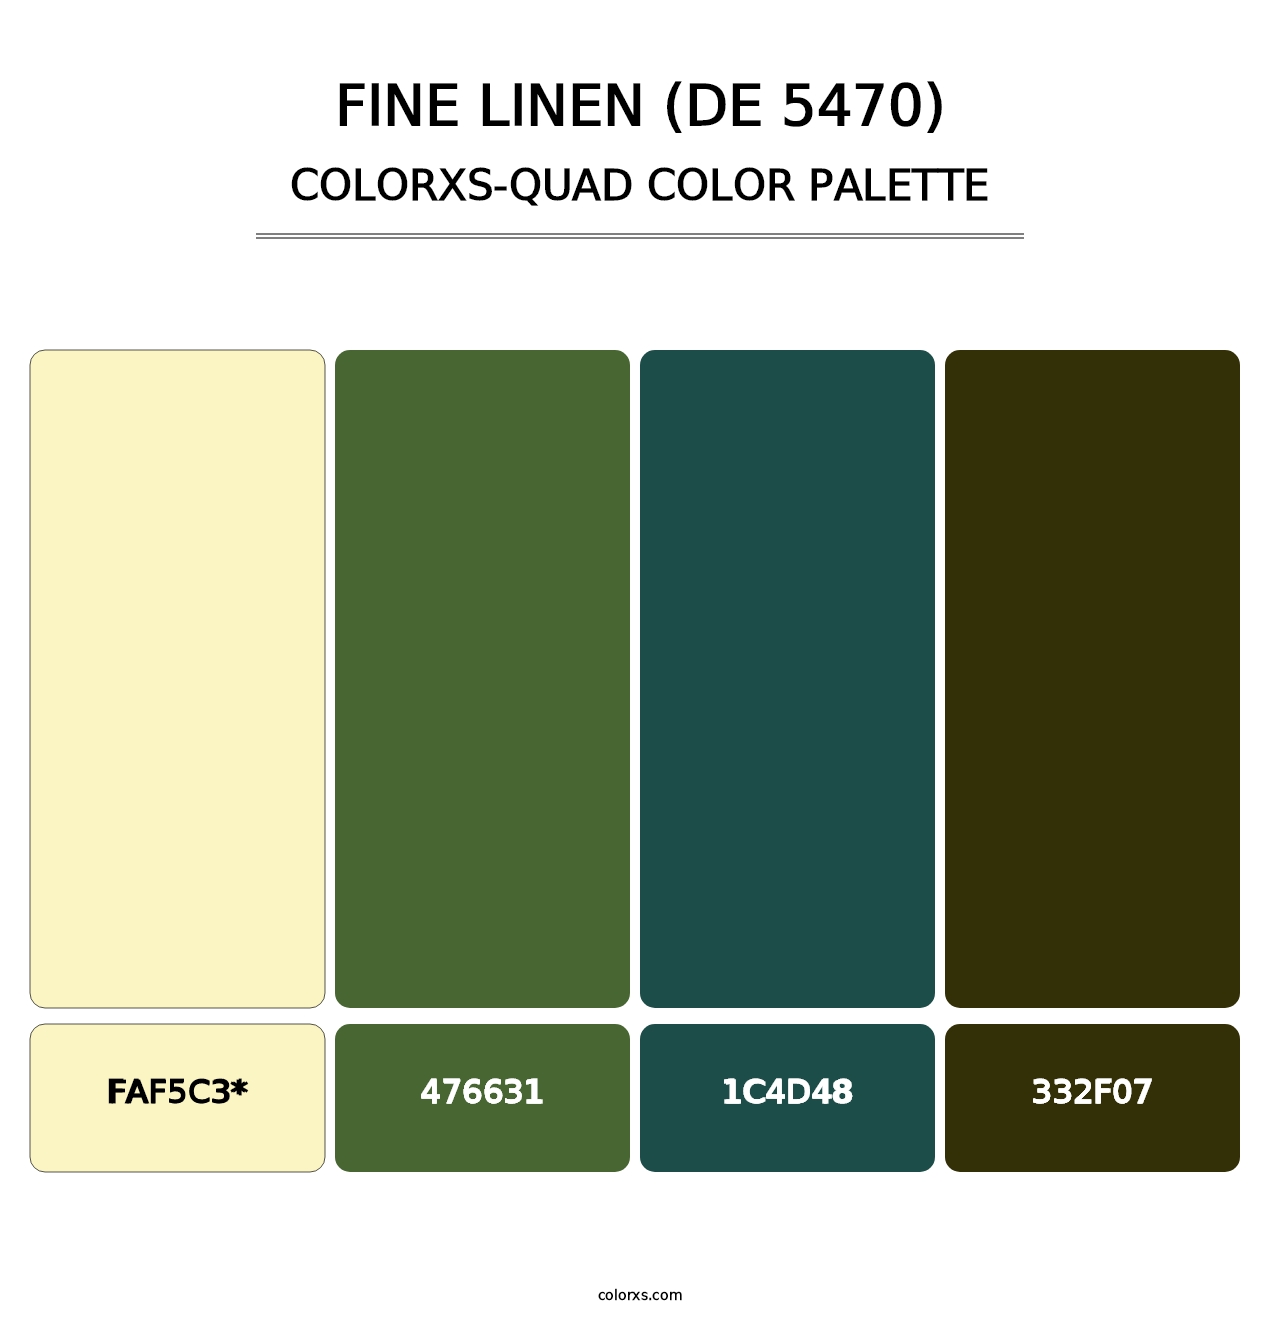 Fine Linen (DE 5470) - Colorxs Quad Palette